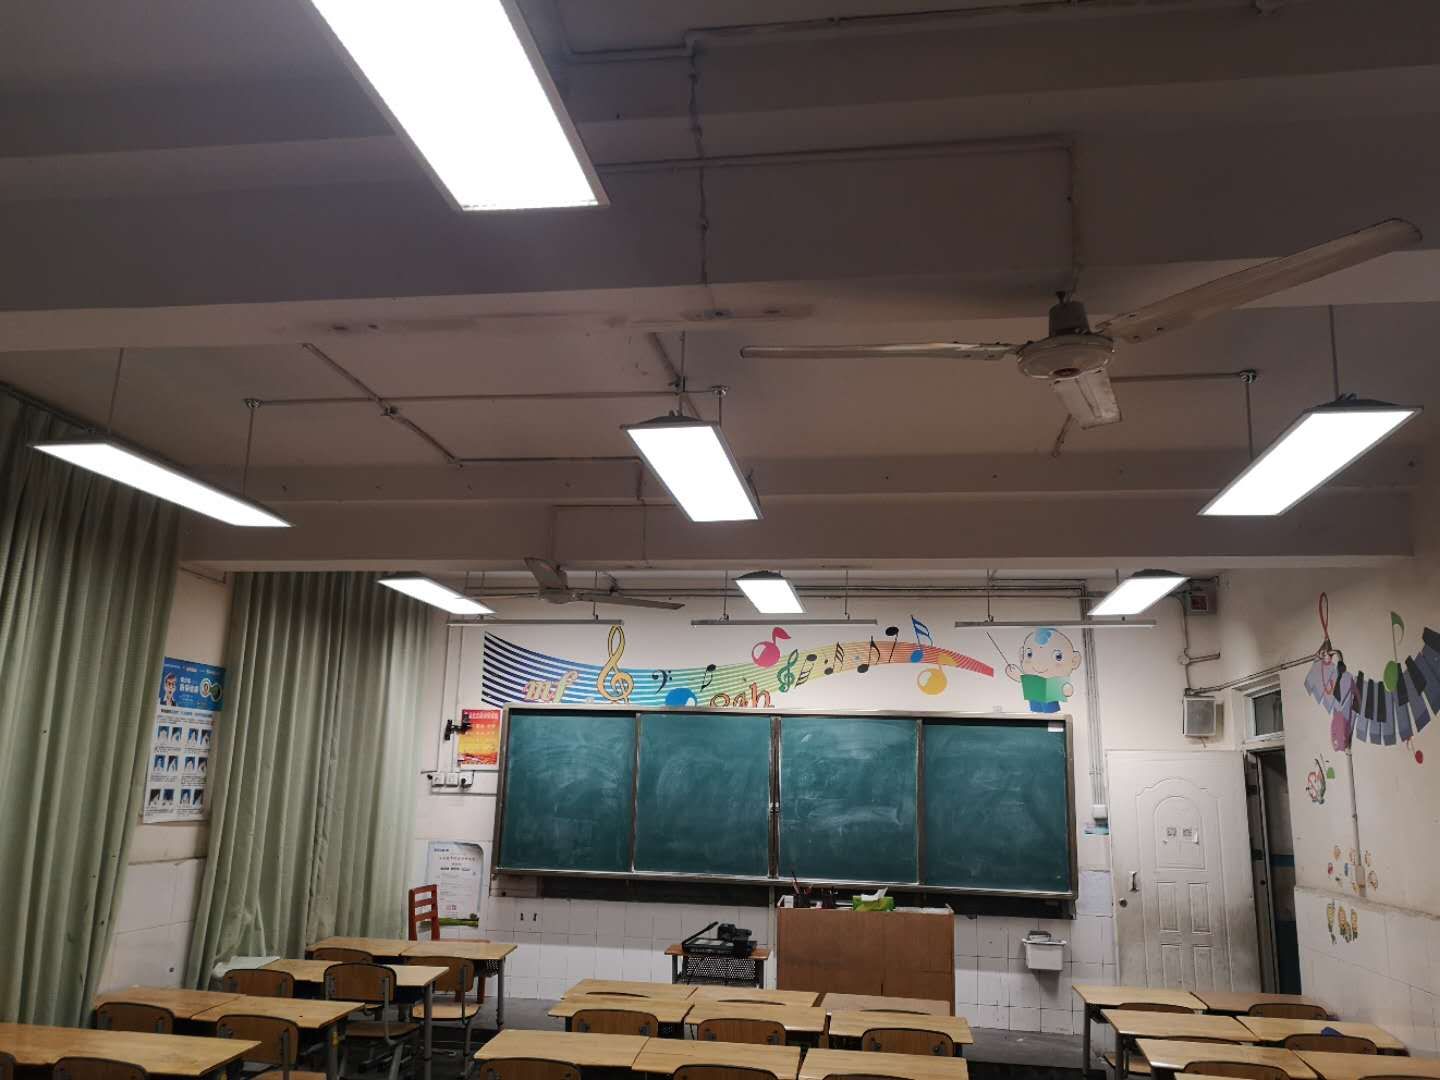 18所学校教室照明改造计划11月完成